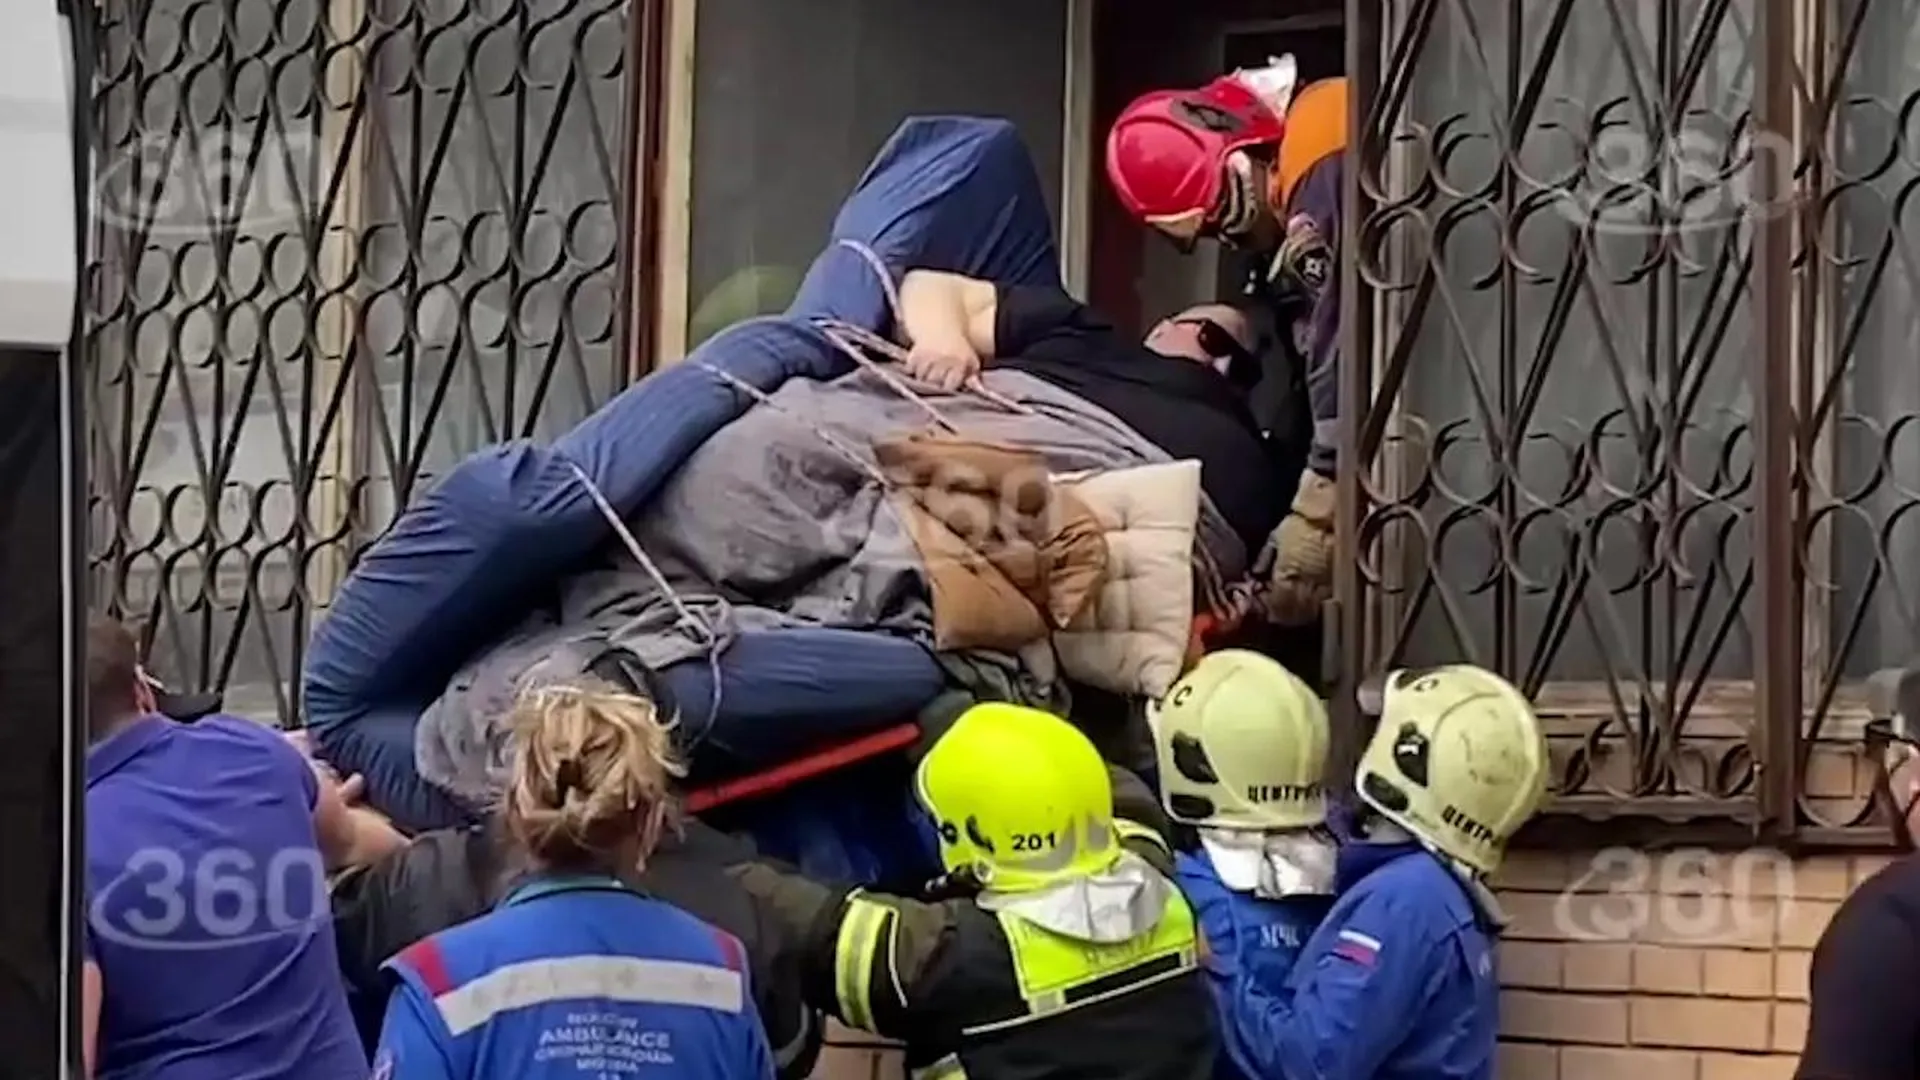 Московского пациента весом в 300 кг достали из квартиры через окно